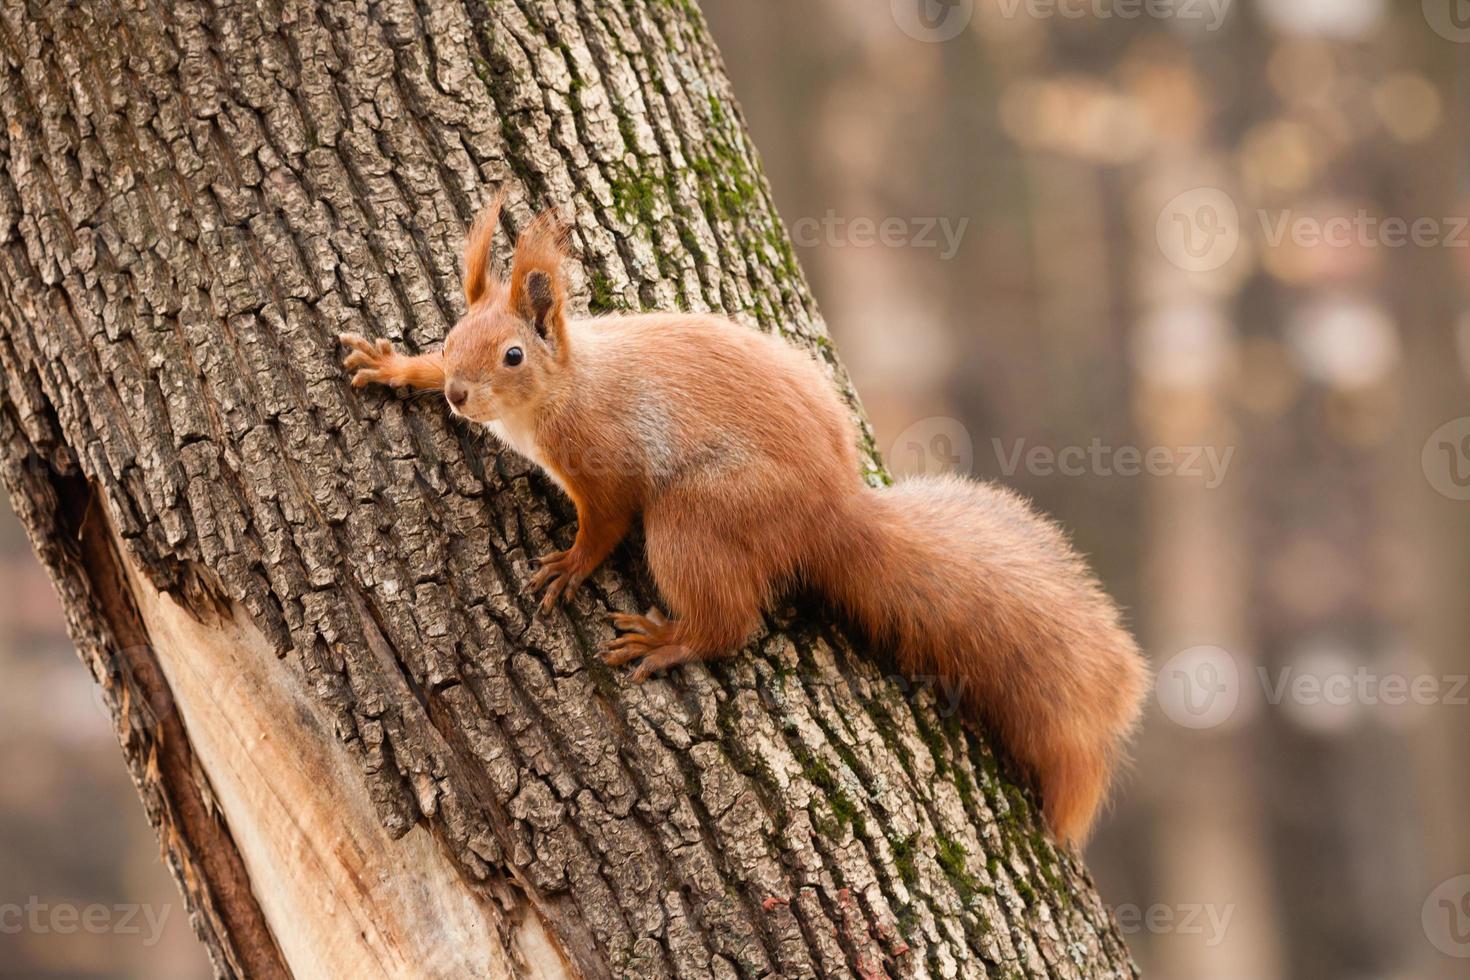 Eichhörnchen auf dem Baum foto